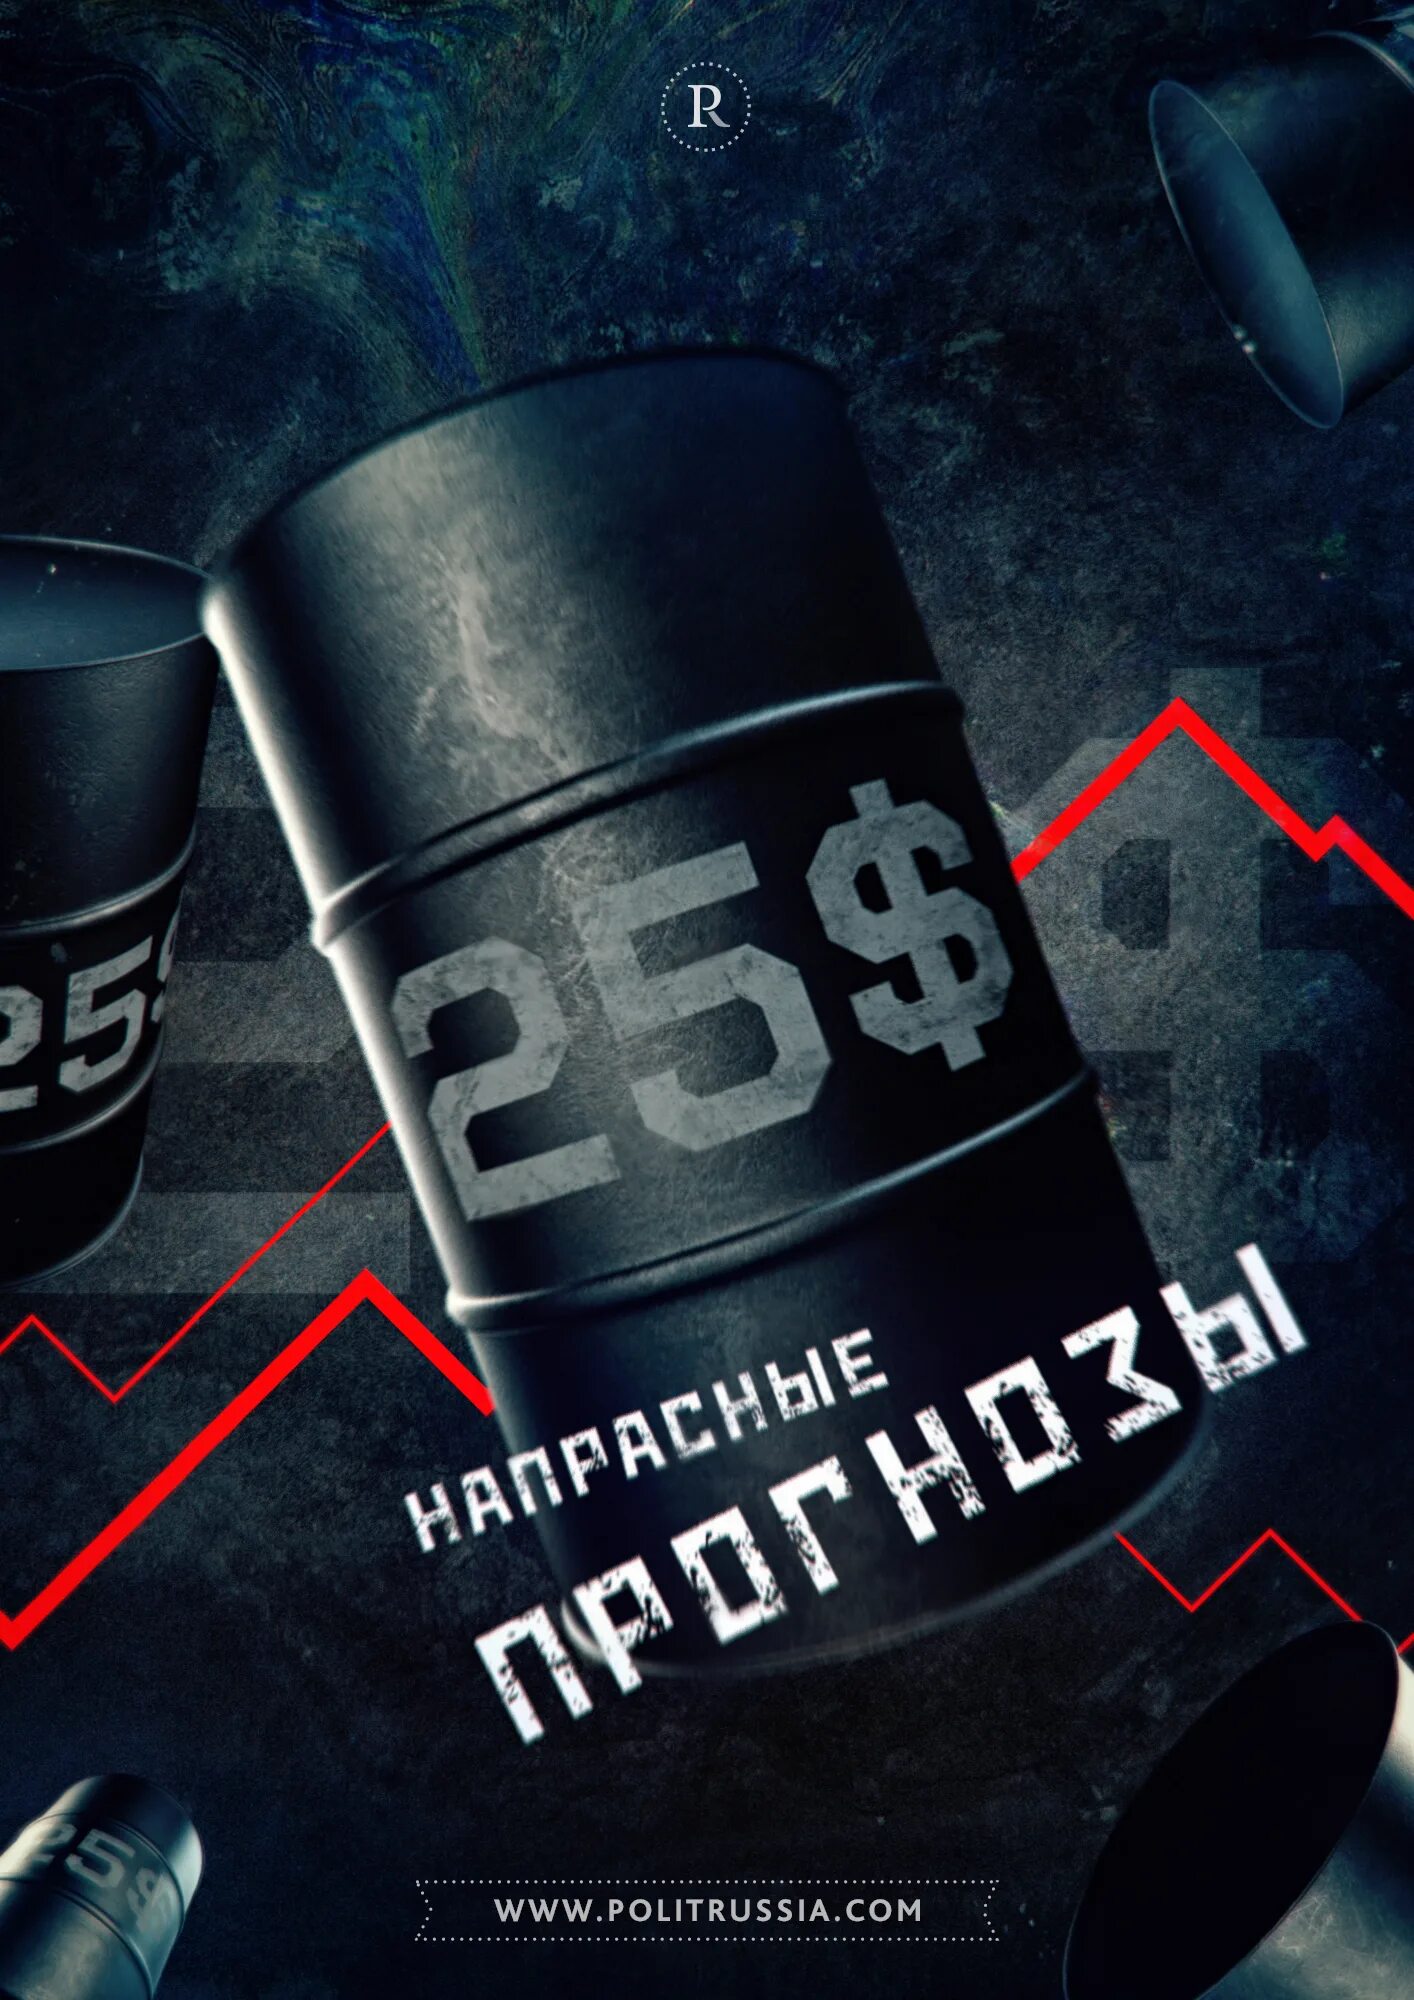 Сколько сегодня баррель. Баррель цена. Нефть цена. Баррель нефти цена 2022 в рублях на сегодня. Баррель нефти цена сегодня.